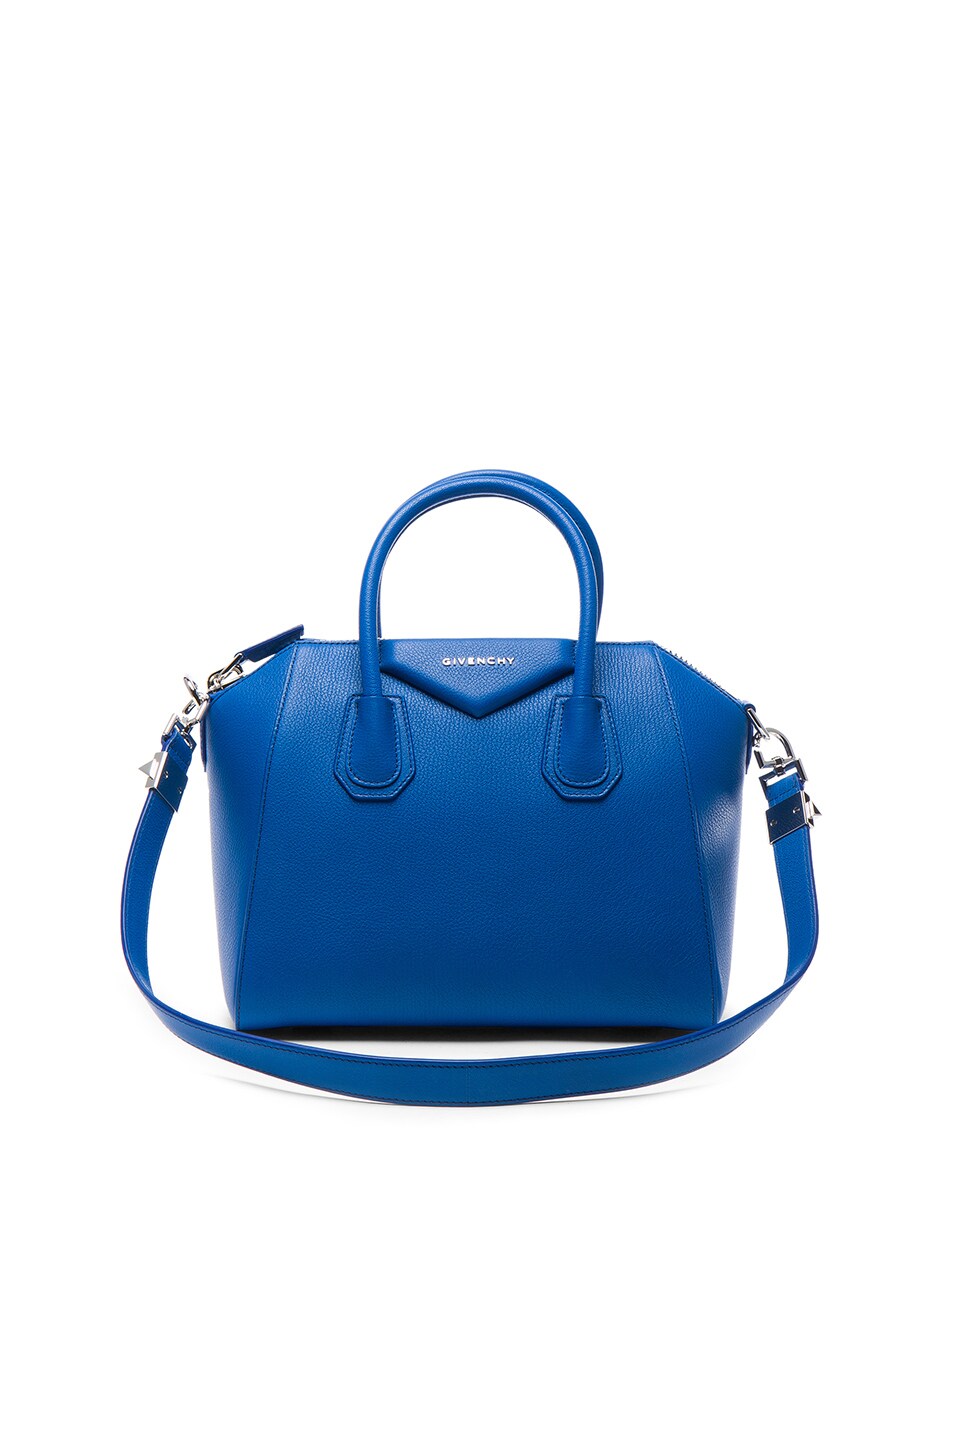 Image 1 of Givenchy Small Sugar Antigona in Indigo Blue